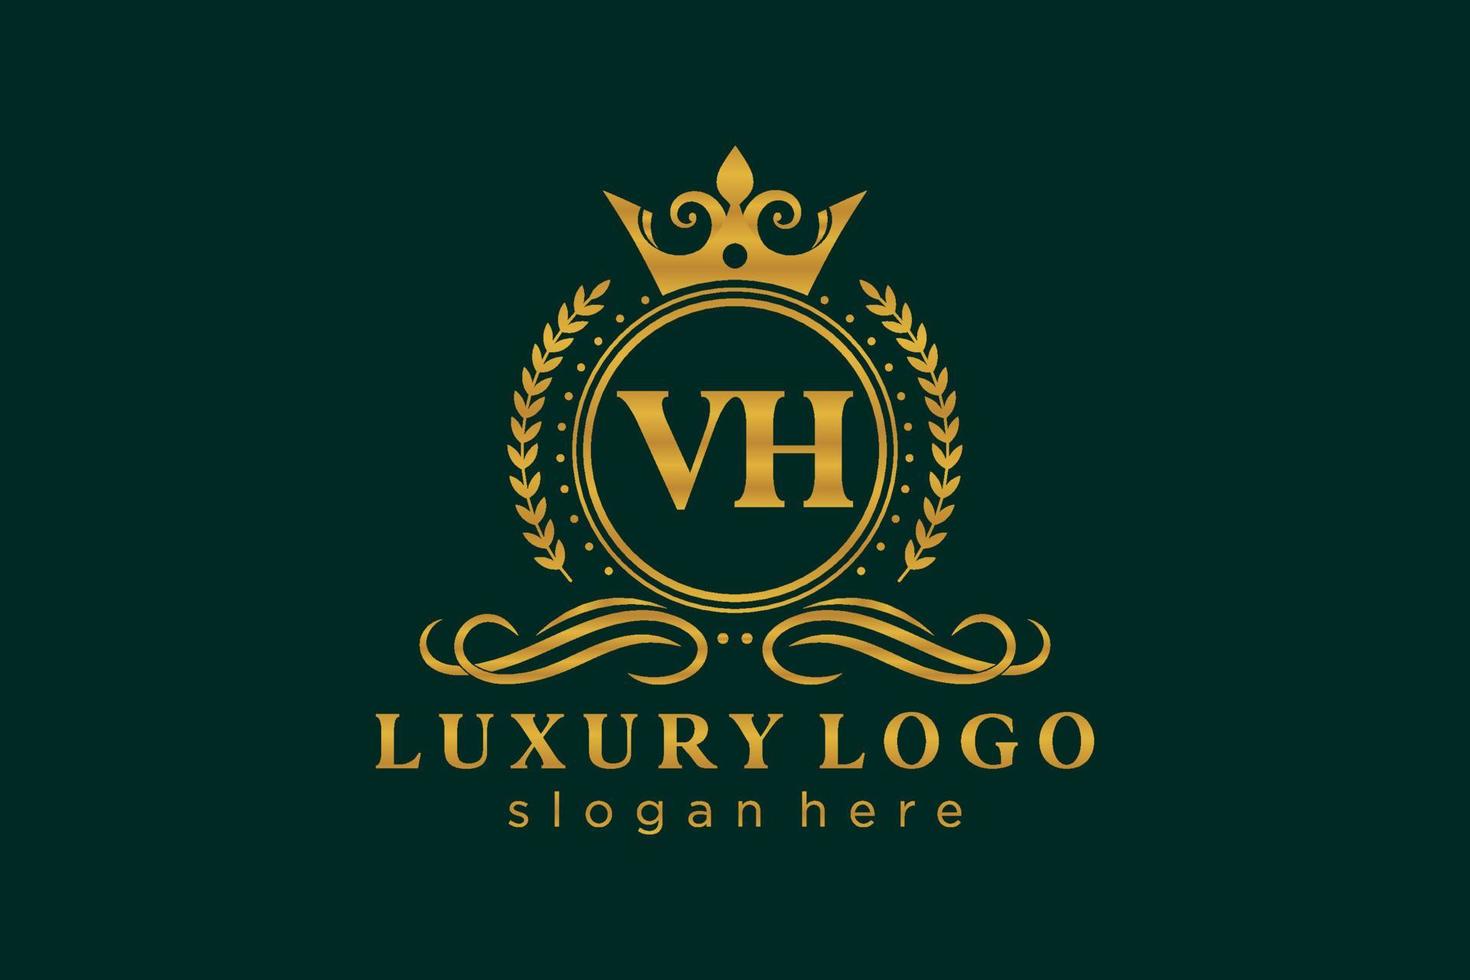 modèle initial de logo de luxe royal de lettre vh dans l'art vectoriel pour le restaurant, la royauté, la boutique, le café, l'hôtel, l'héraldique, les bijoux, la mode et d'autres illustrations vectorielles.